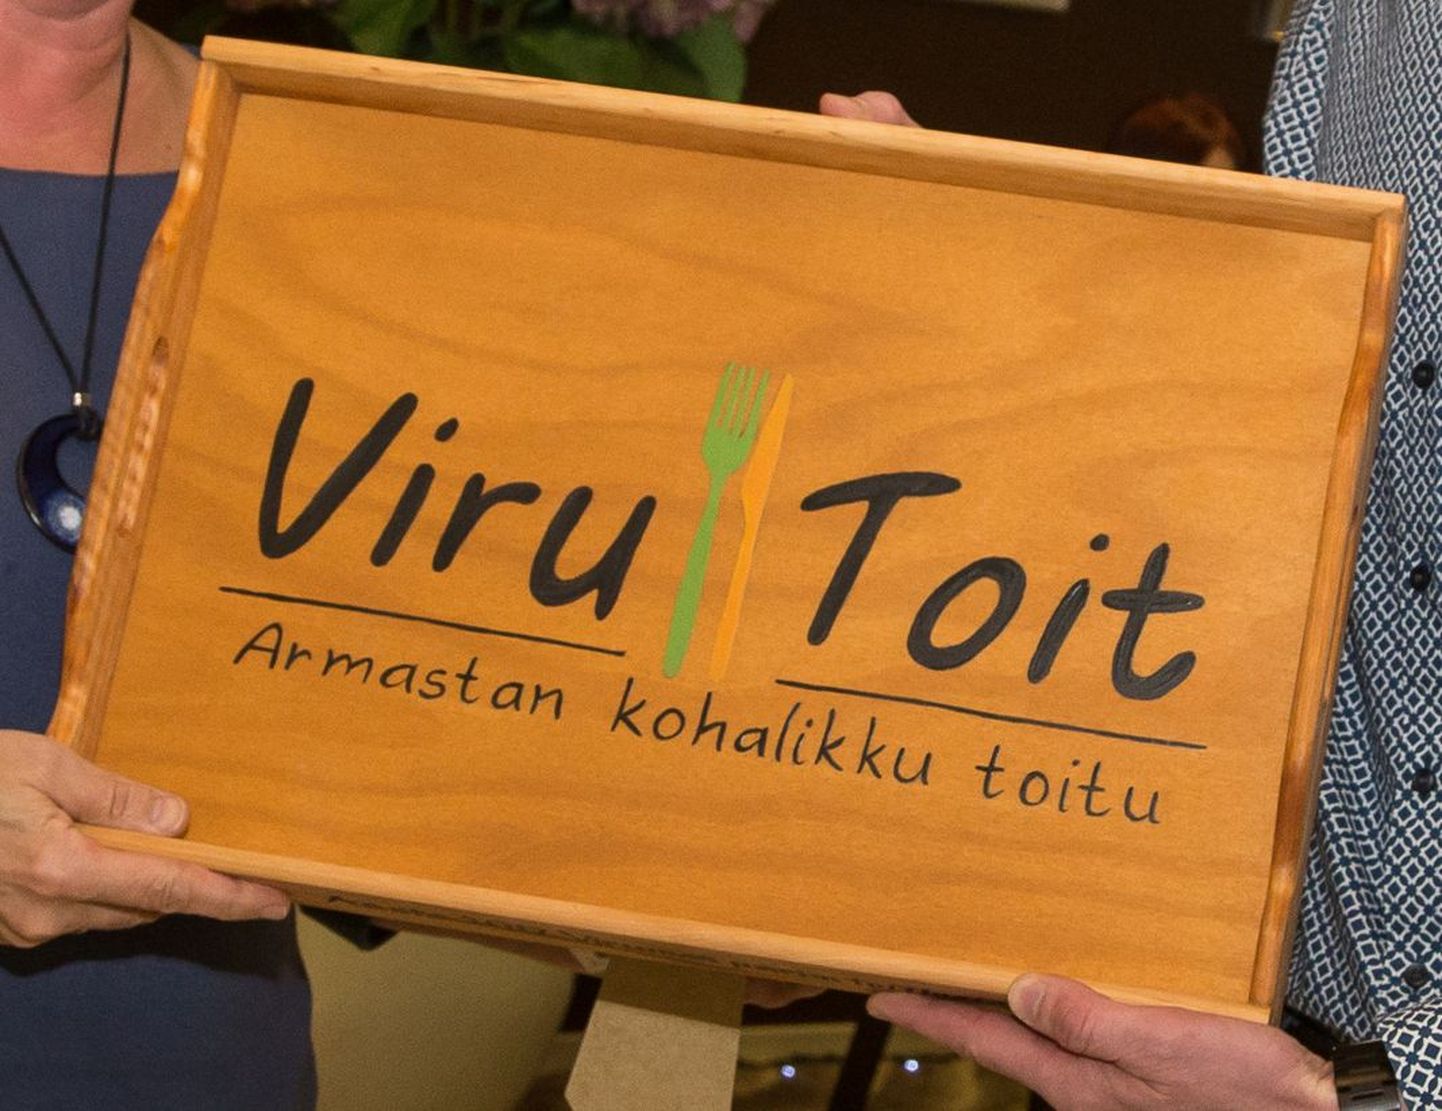 Вирумааских производителей продуктов питания объединяет "Viru Toit".